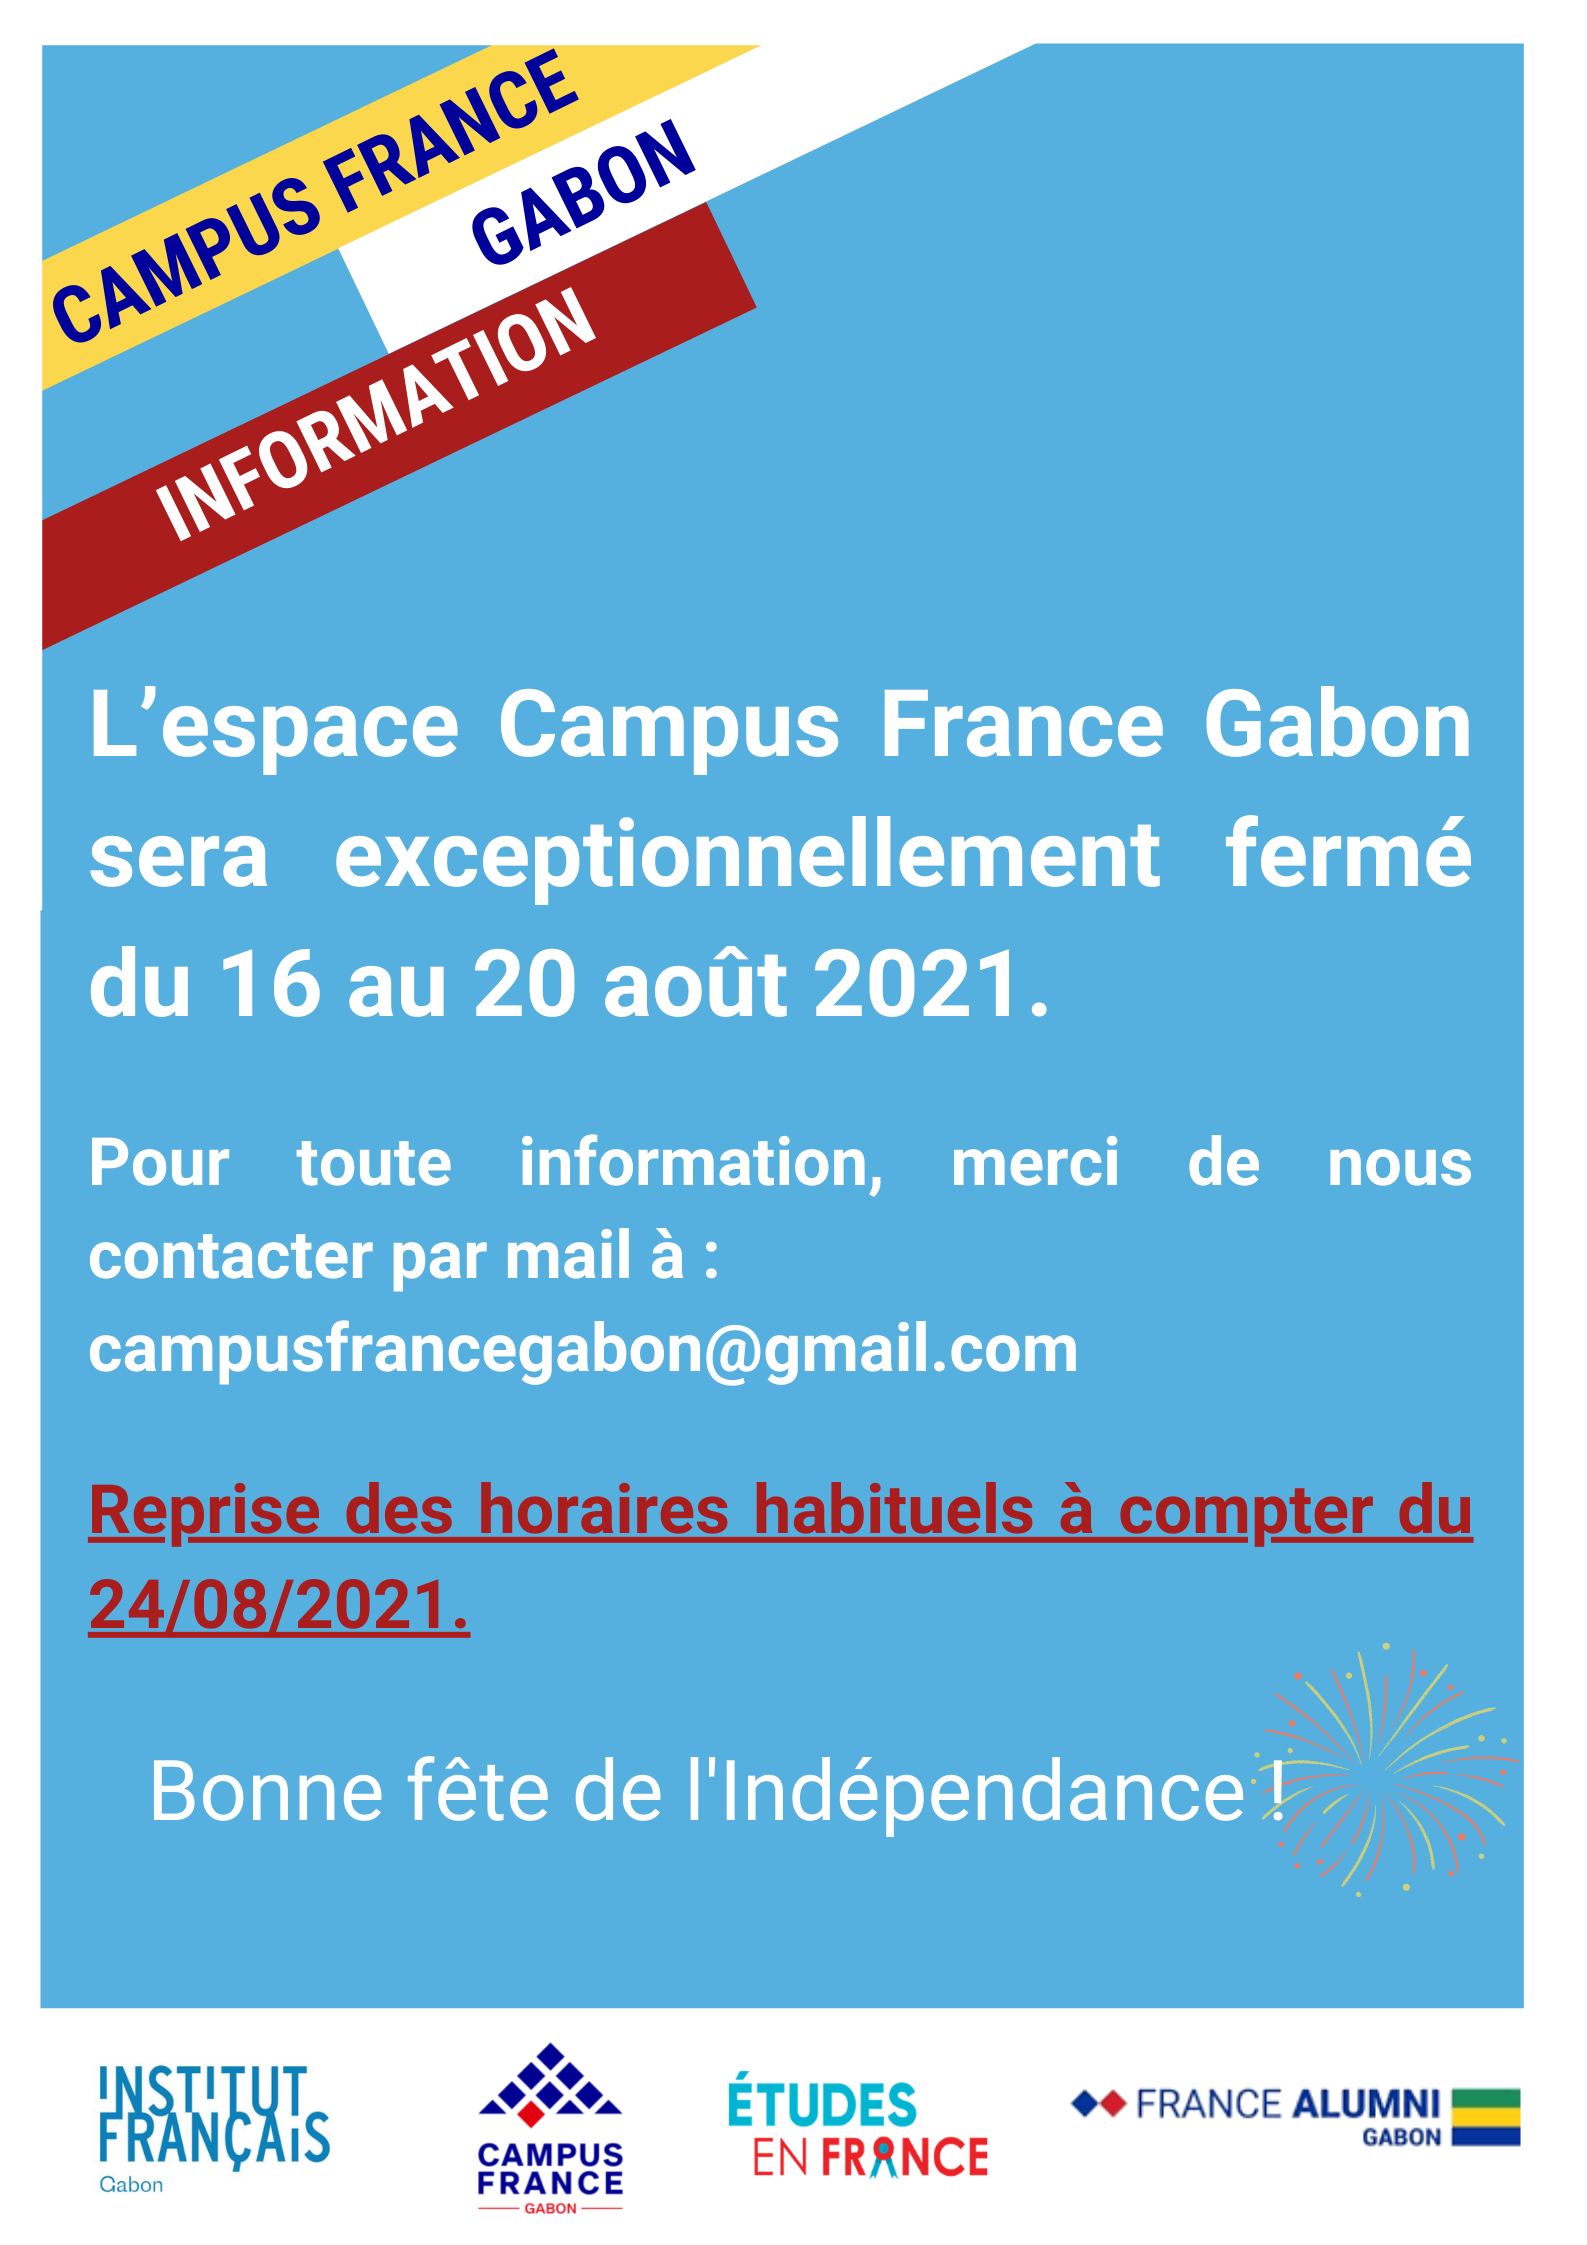 Fermeture de l'espace Campus France Gabon  Campus France